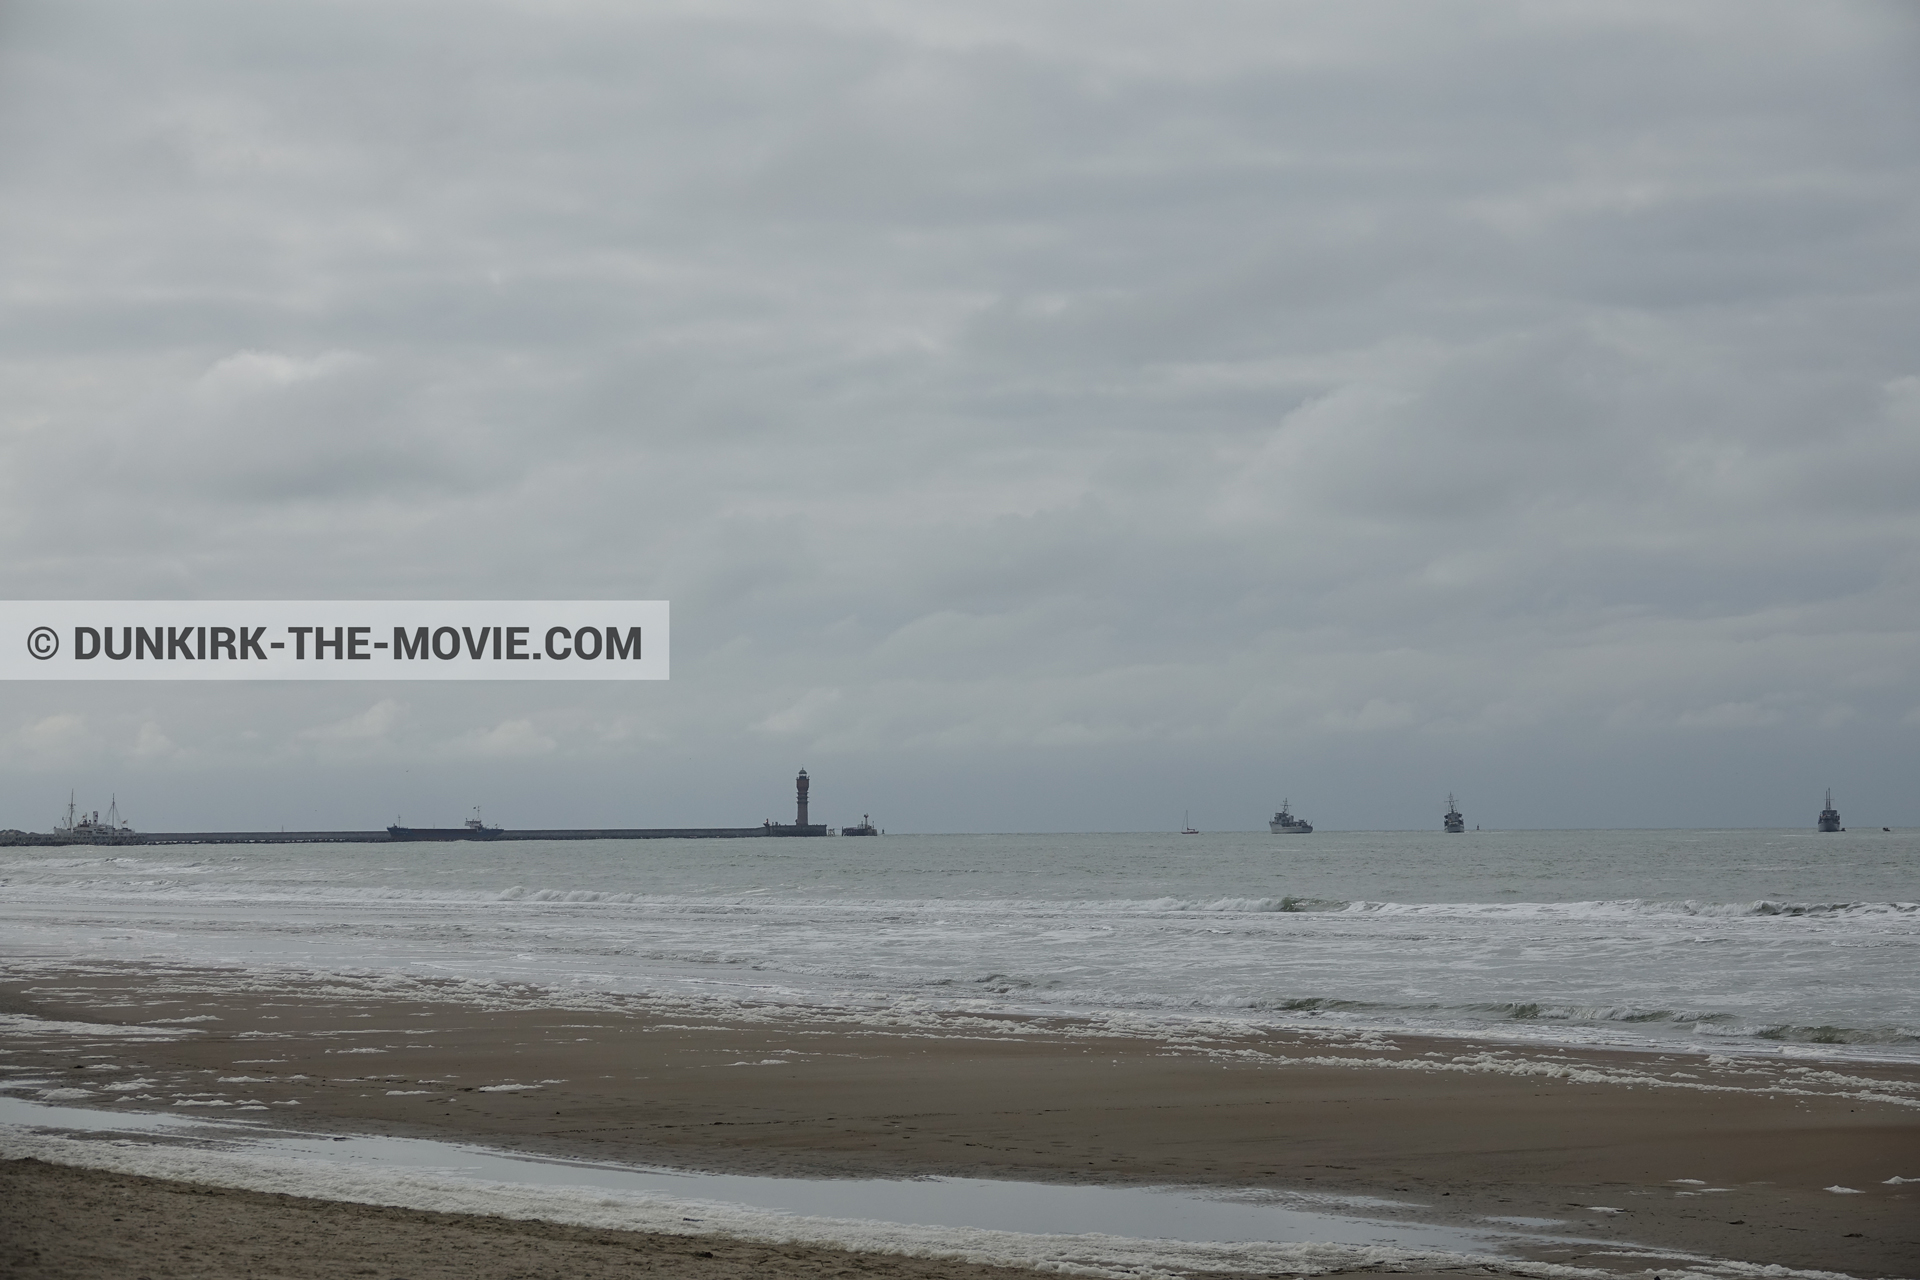 Fotos con barco, cielo nublado, Malo les Bains, faro de Saint-Pol-sur-Mer, playa,  durante el rodaje de la película Dunkerque de Nolan